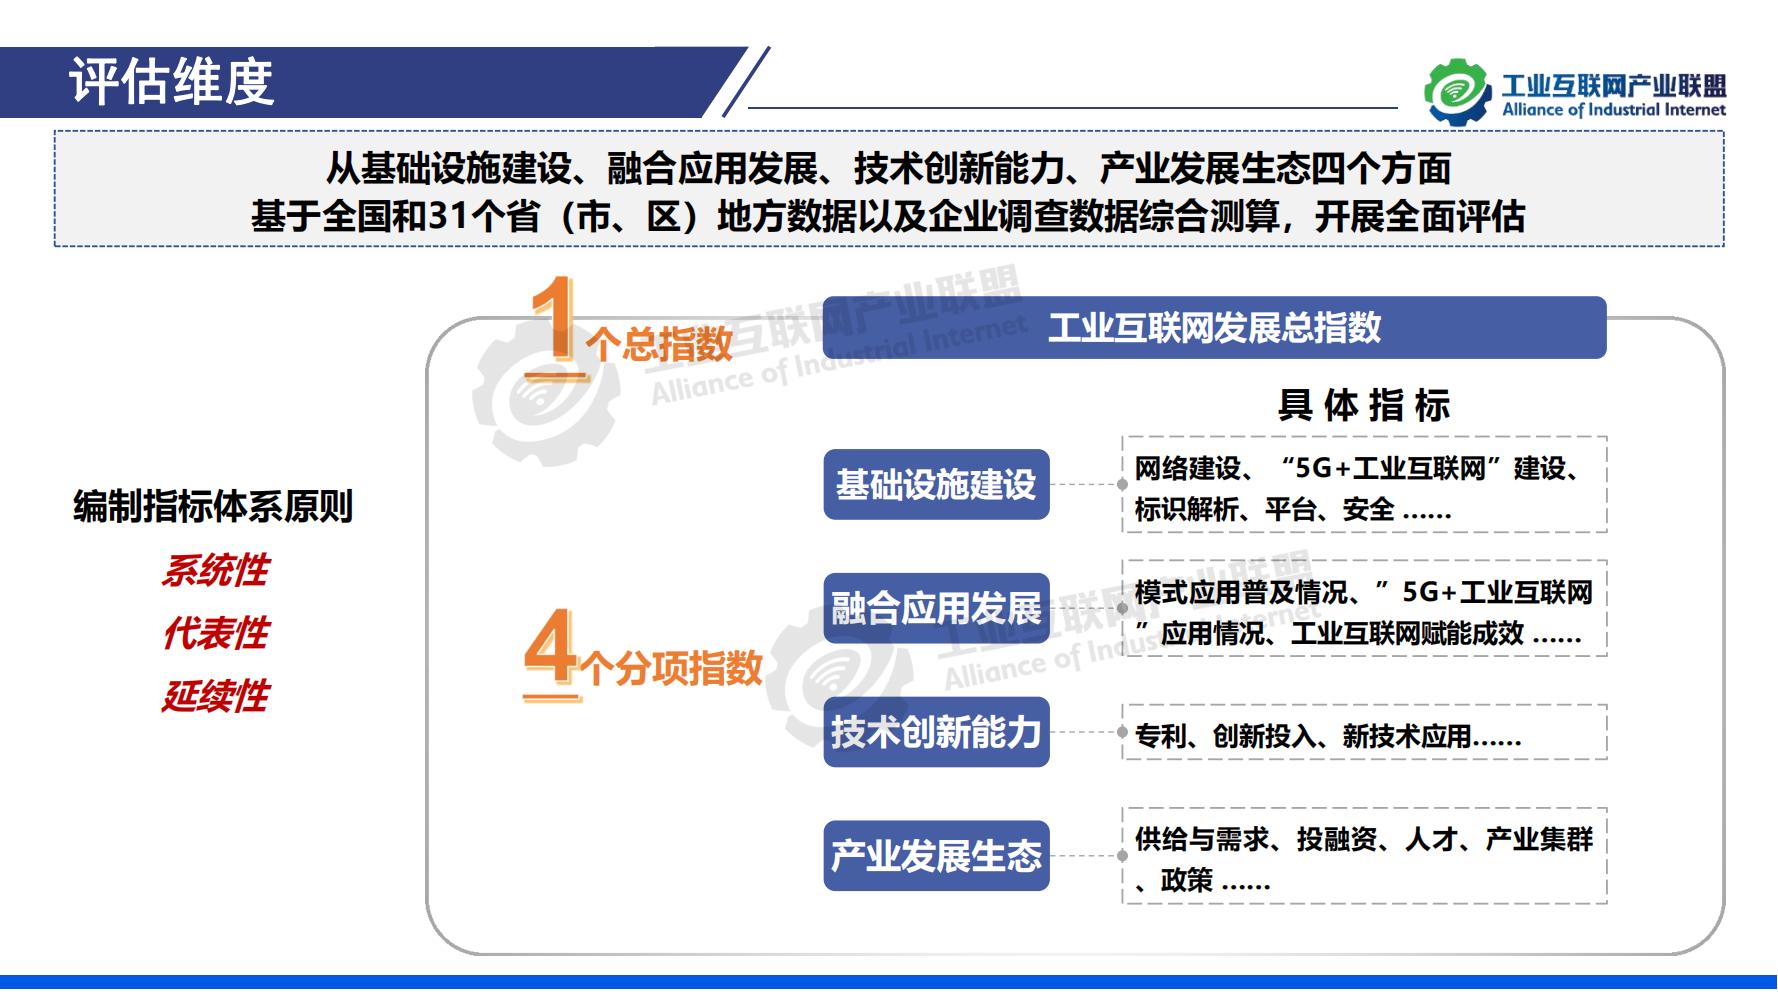 1-中国工业互联网发展成效评估报告-水印_03.jpg